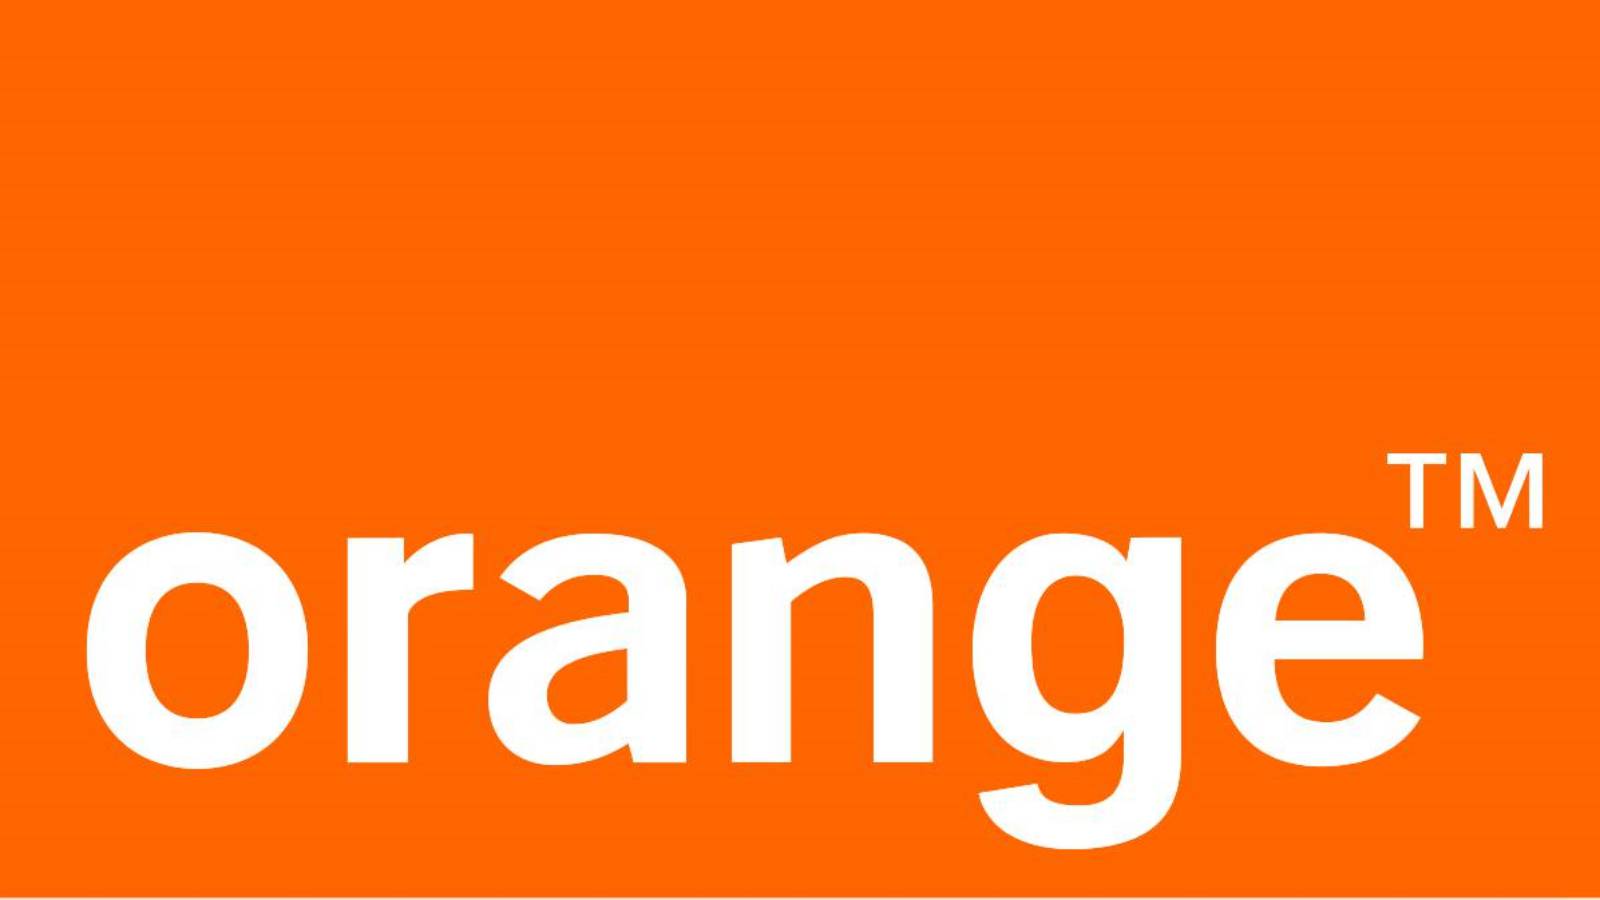 Orange alert e.g